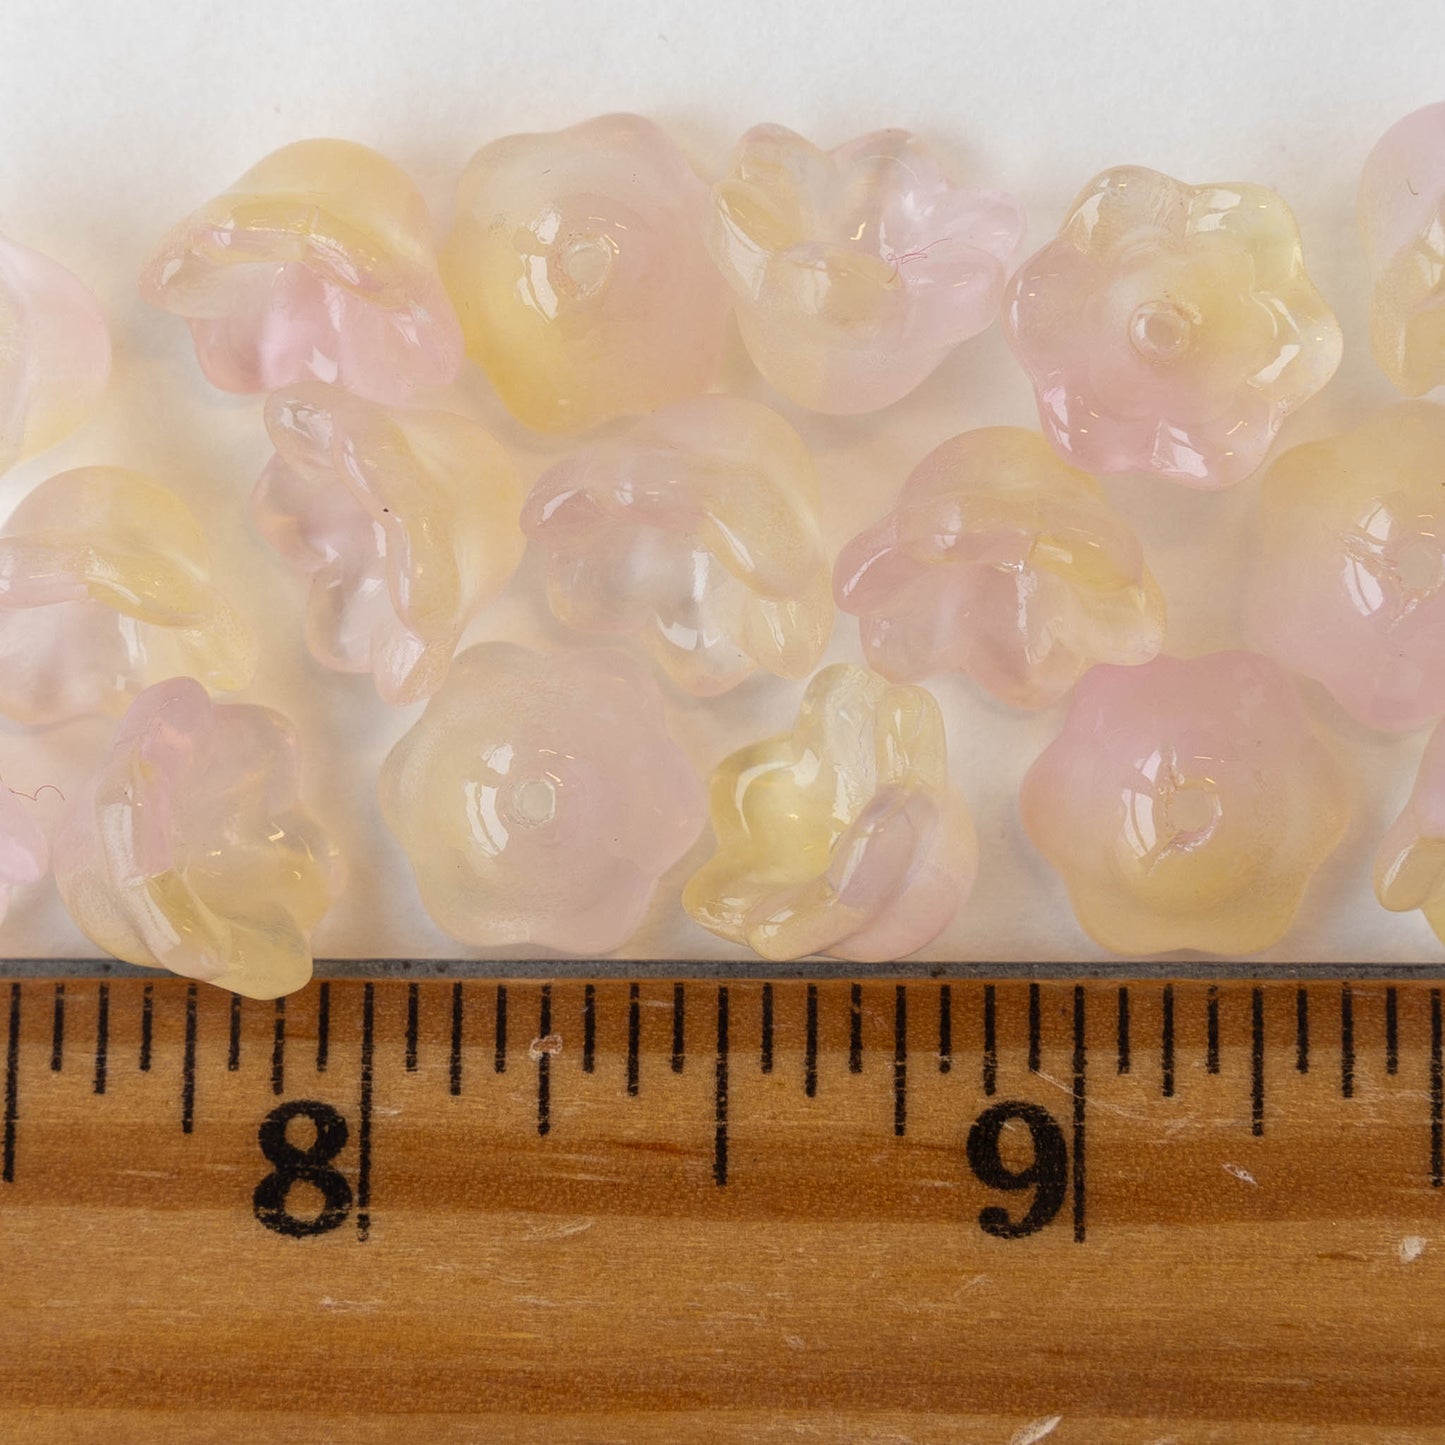 7x12mm Flower Beads - Pink Yellow Opaline Mix - 30 Beads